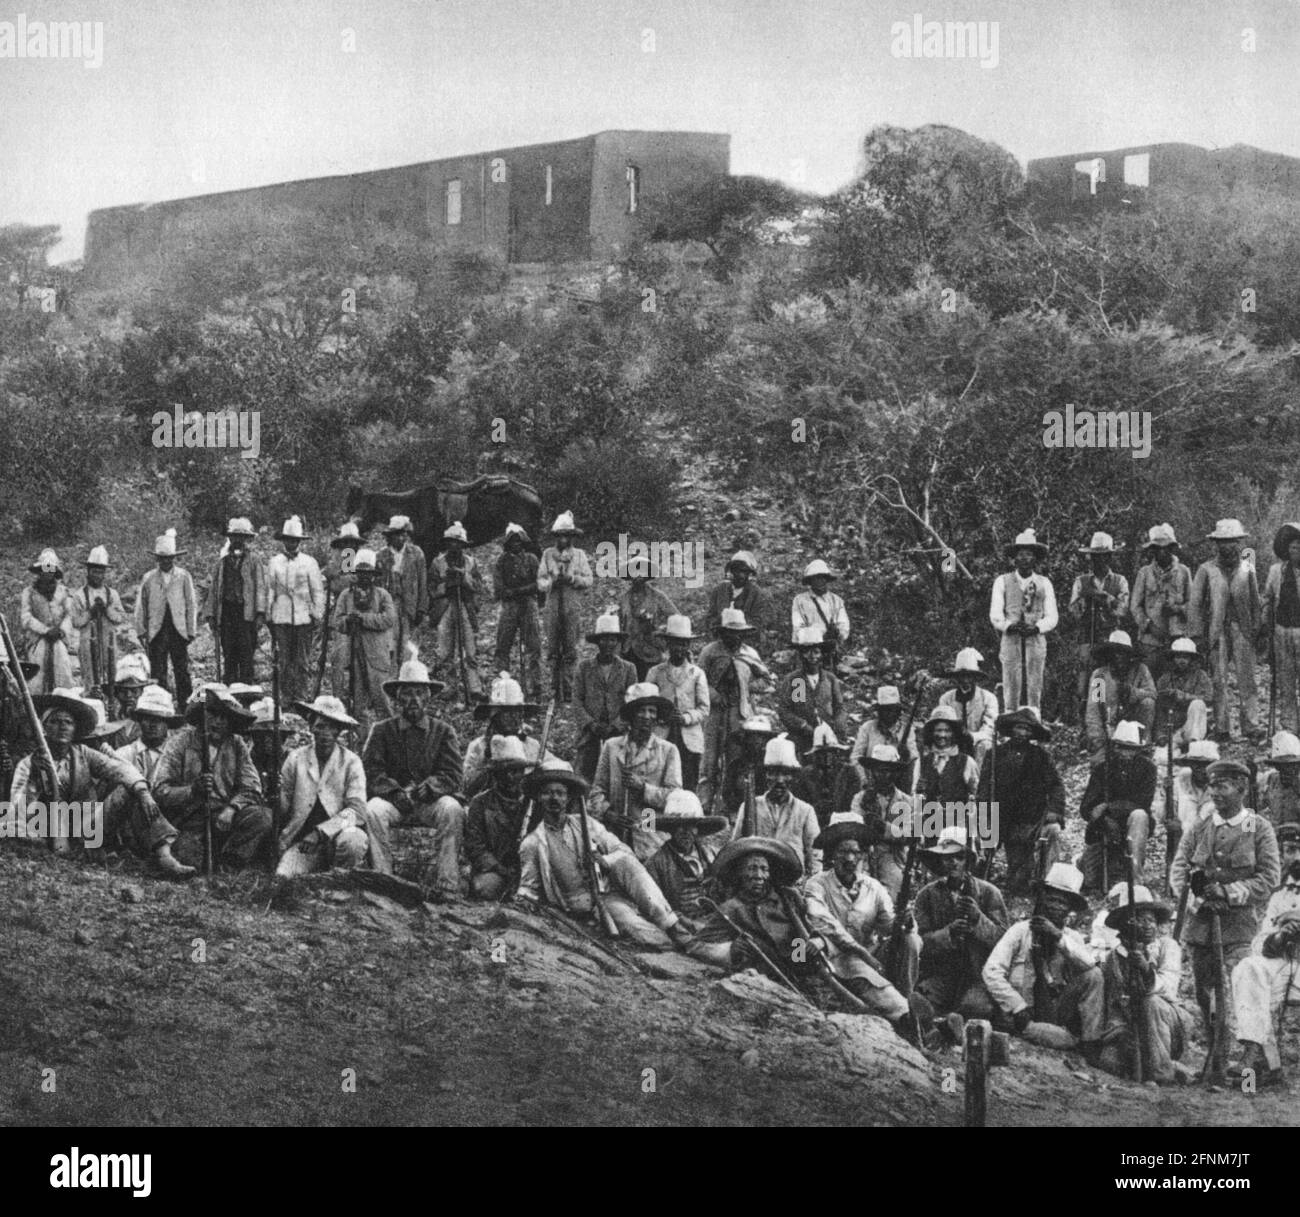 Kolonialismus, Deutsch-Südwestafrika, Herero-Aufstand 1904, Chef Hendrik Witbooi mit seinen Orlog-Männern, ZUSÄTZLICHE-RIGHTS-CLEARANCE-INFO-NOT-AVAILABLE Stockfoto